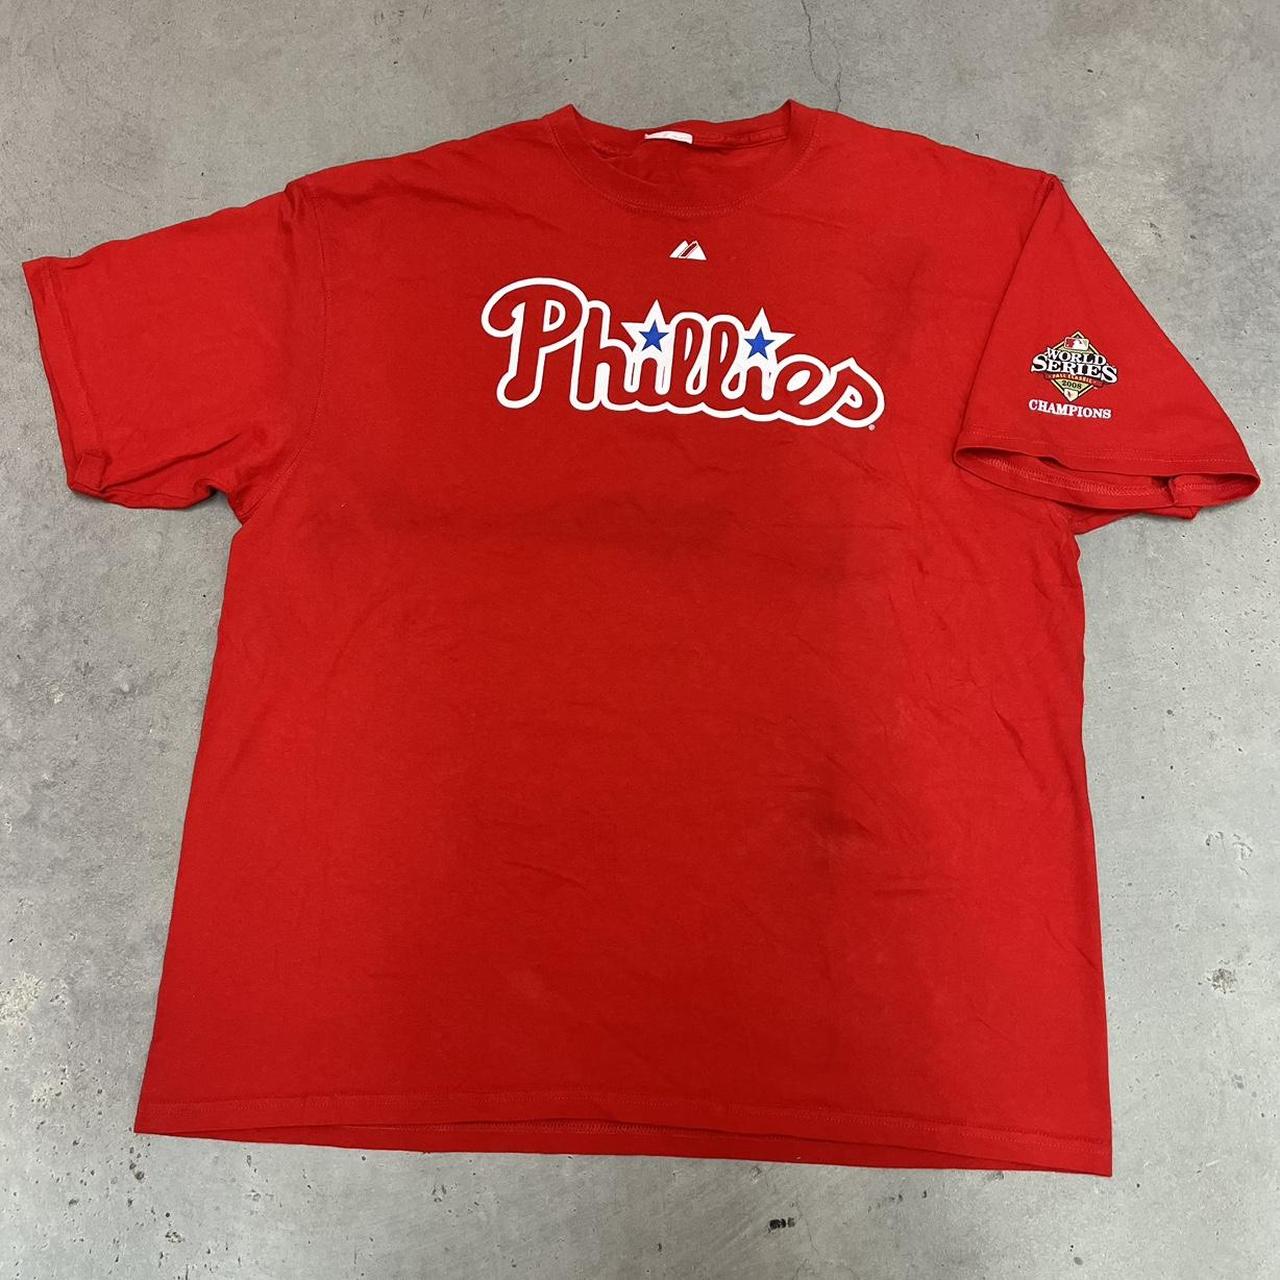 MLB Men's T-Shirt - Red - XXL